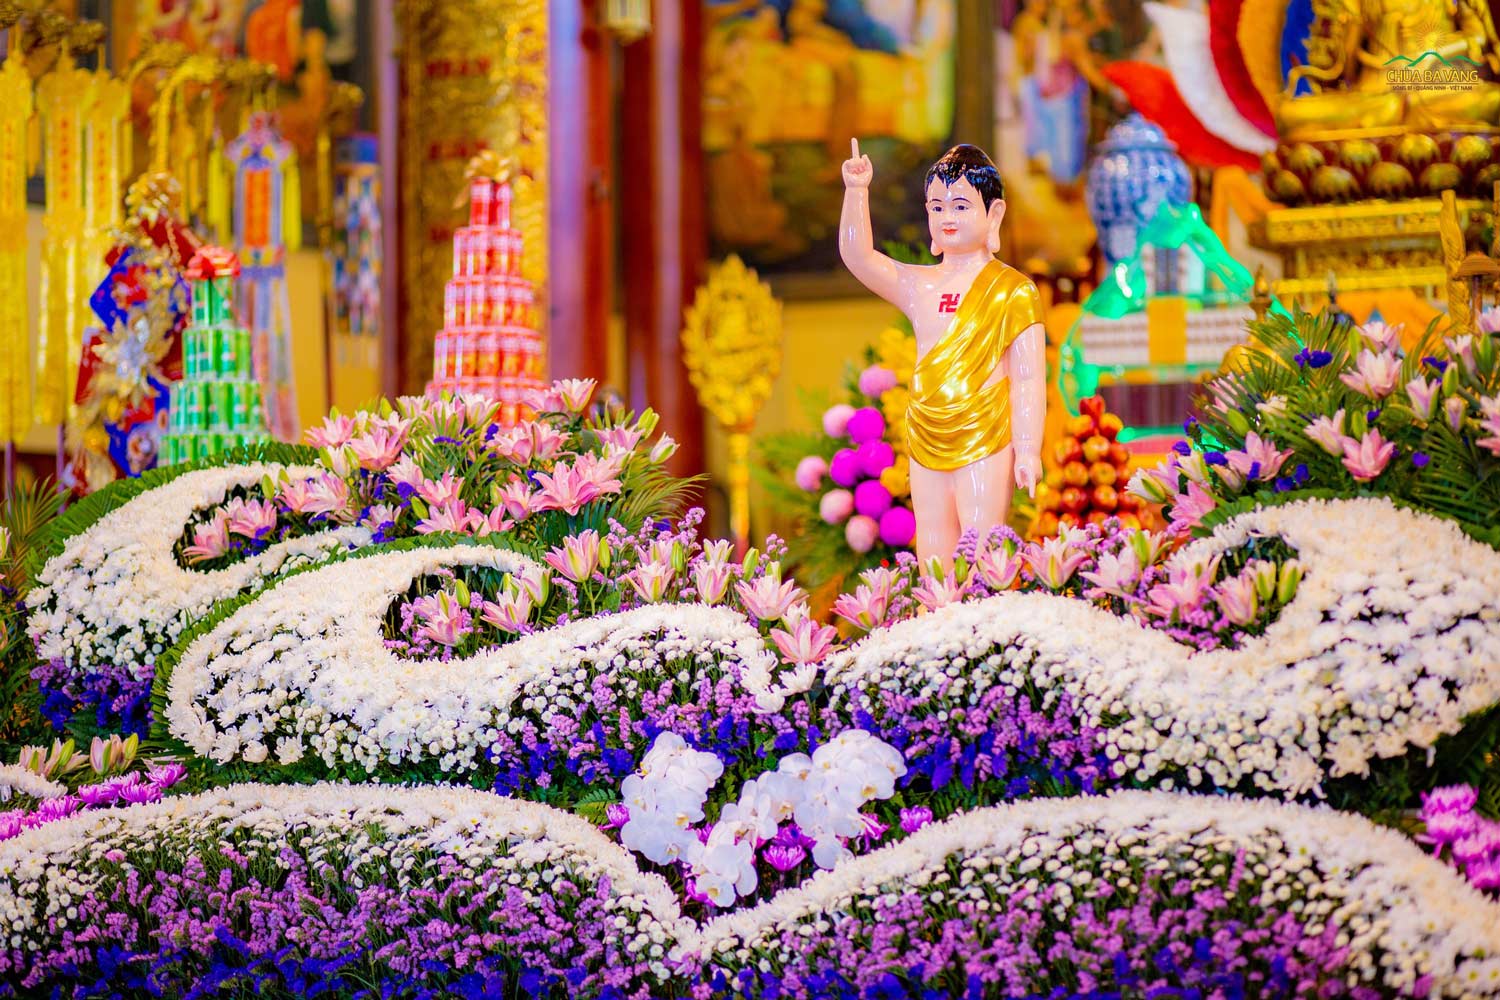 Với lòng thành kính và sự khéo léo, các Phật tử đã cùng nhau tạo nên những đài hoa rực rỡ kính dâng Đức Thế Tôn